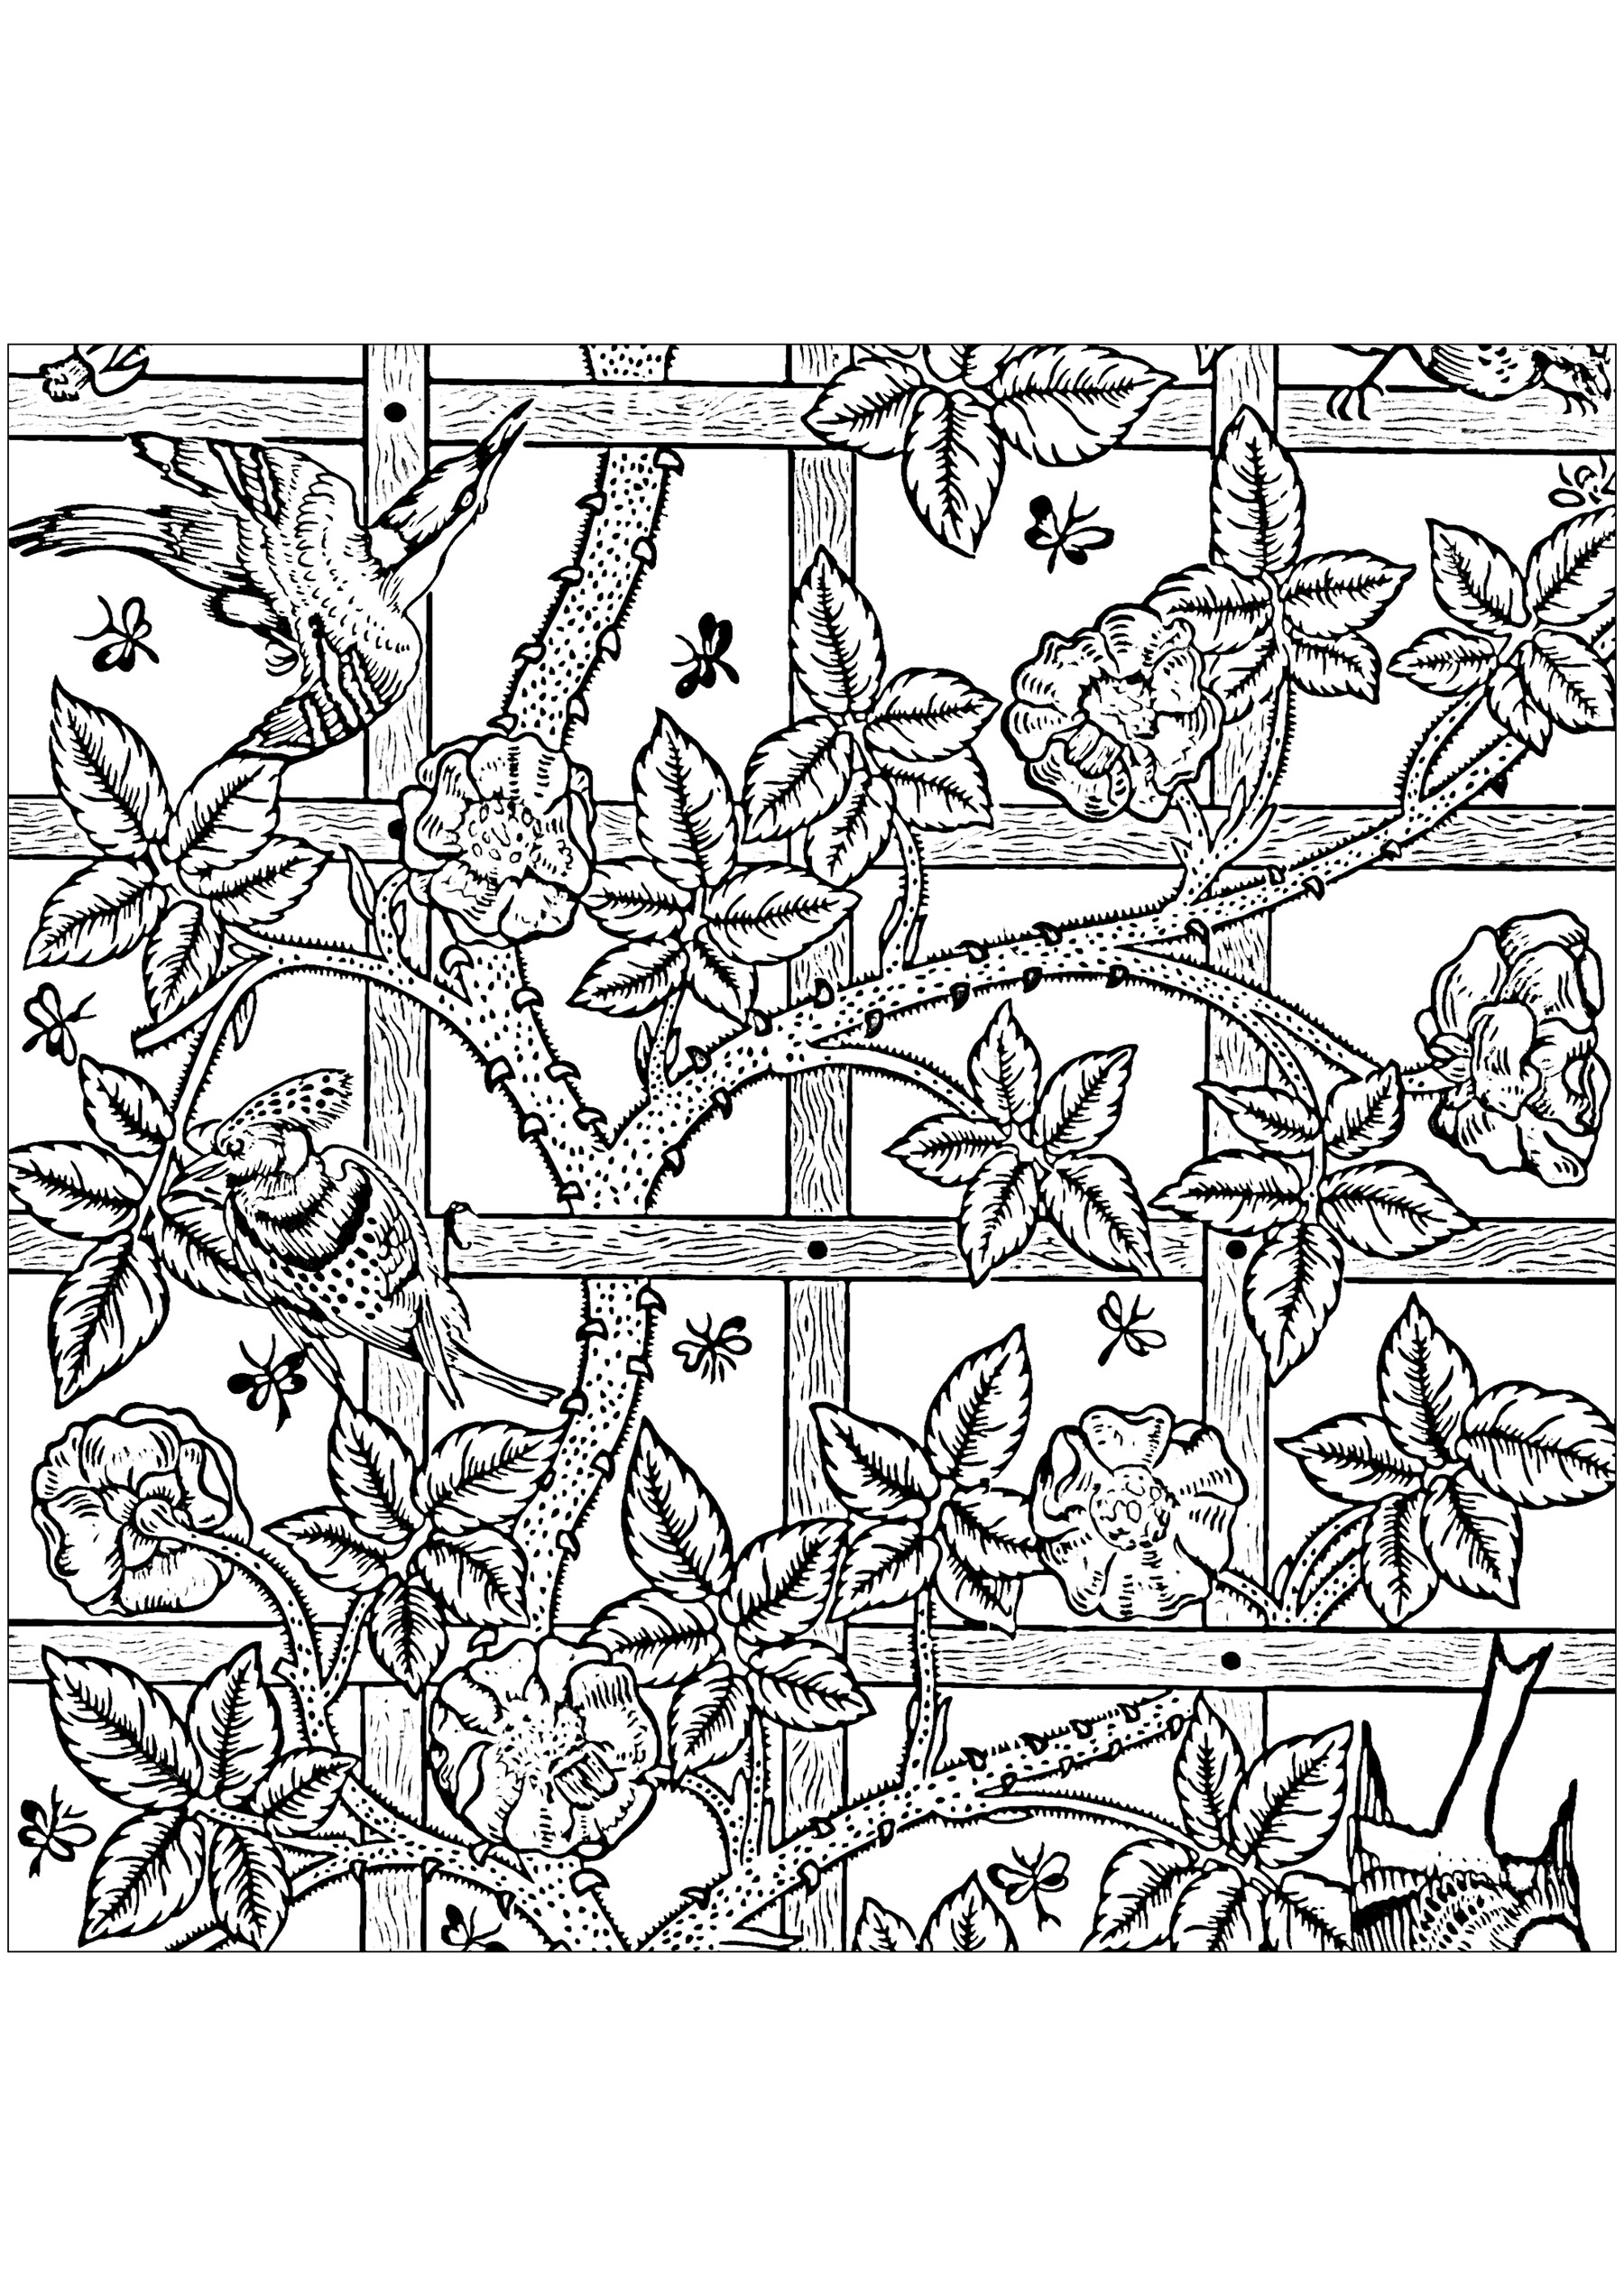 Página para colorir criada a partir do padrão de papel de parede criado por William Morris: 'Trellis' em 1864. Na Grã-Bretanha, o papel impresso com padrões tem sido utilizado para decorar paredes desde o século XVI. No final do século XIX, os papéis de parede eram amplamente utilizados em casas e edifícios públicos. William Morris desenhou uma série de papéis de parede, todos com padrões repetitivos baseados em formas naturais e animais.